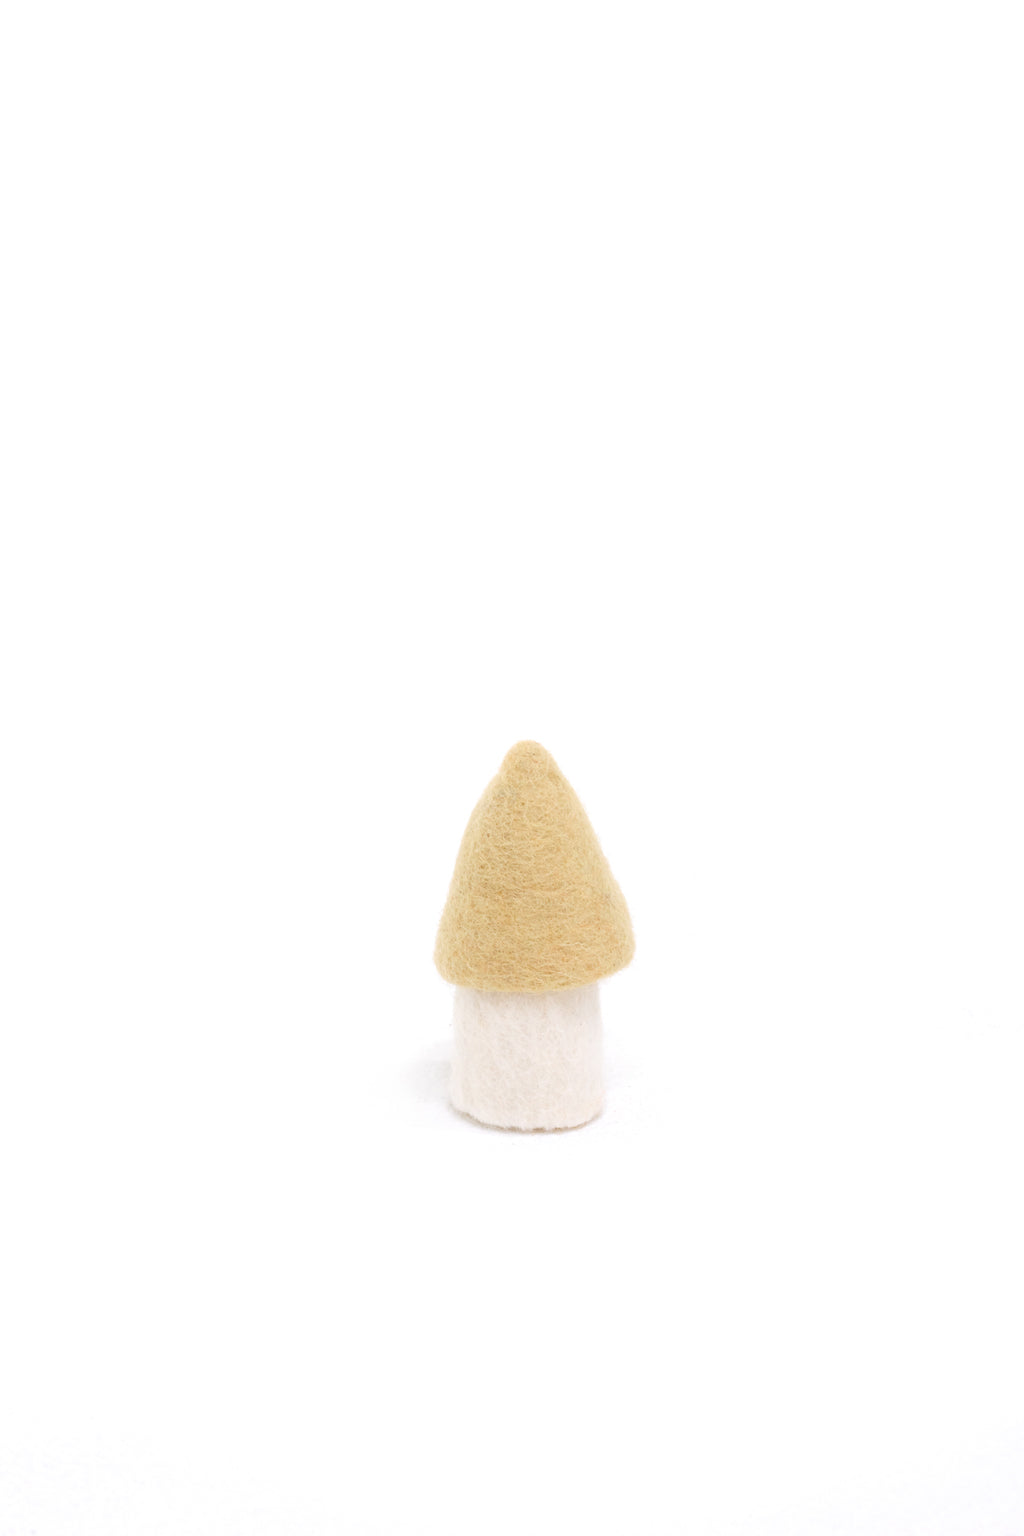 Morel Mushroom - Small 9cm